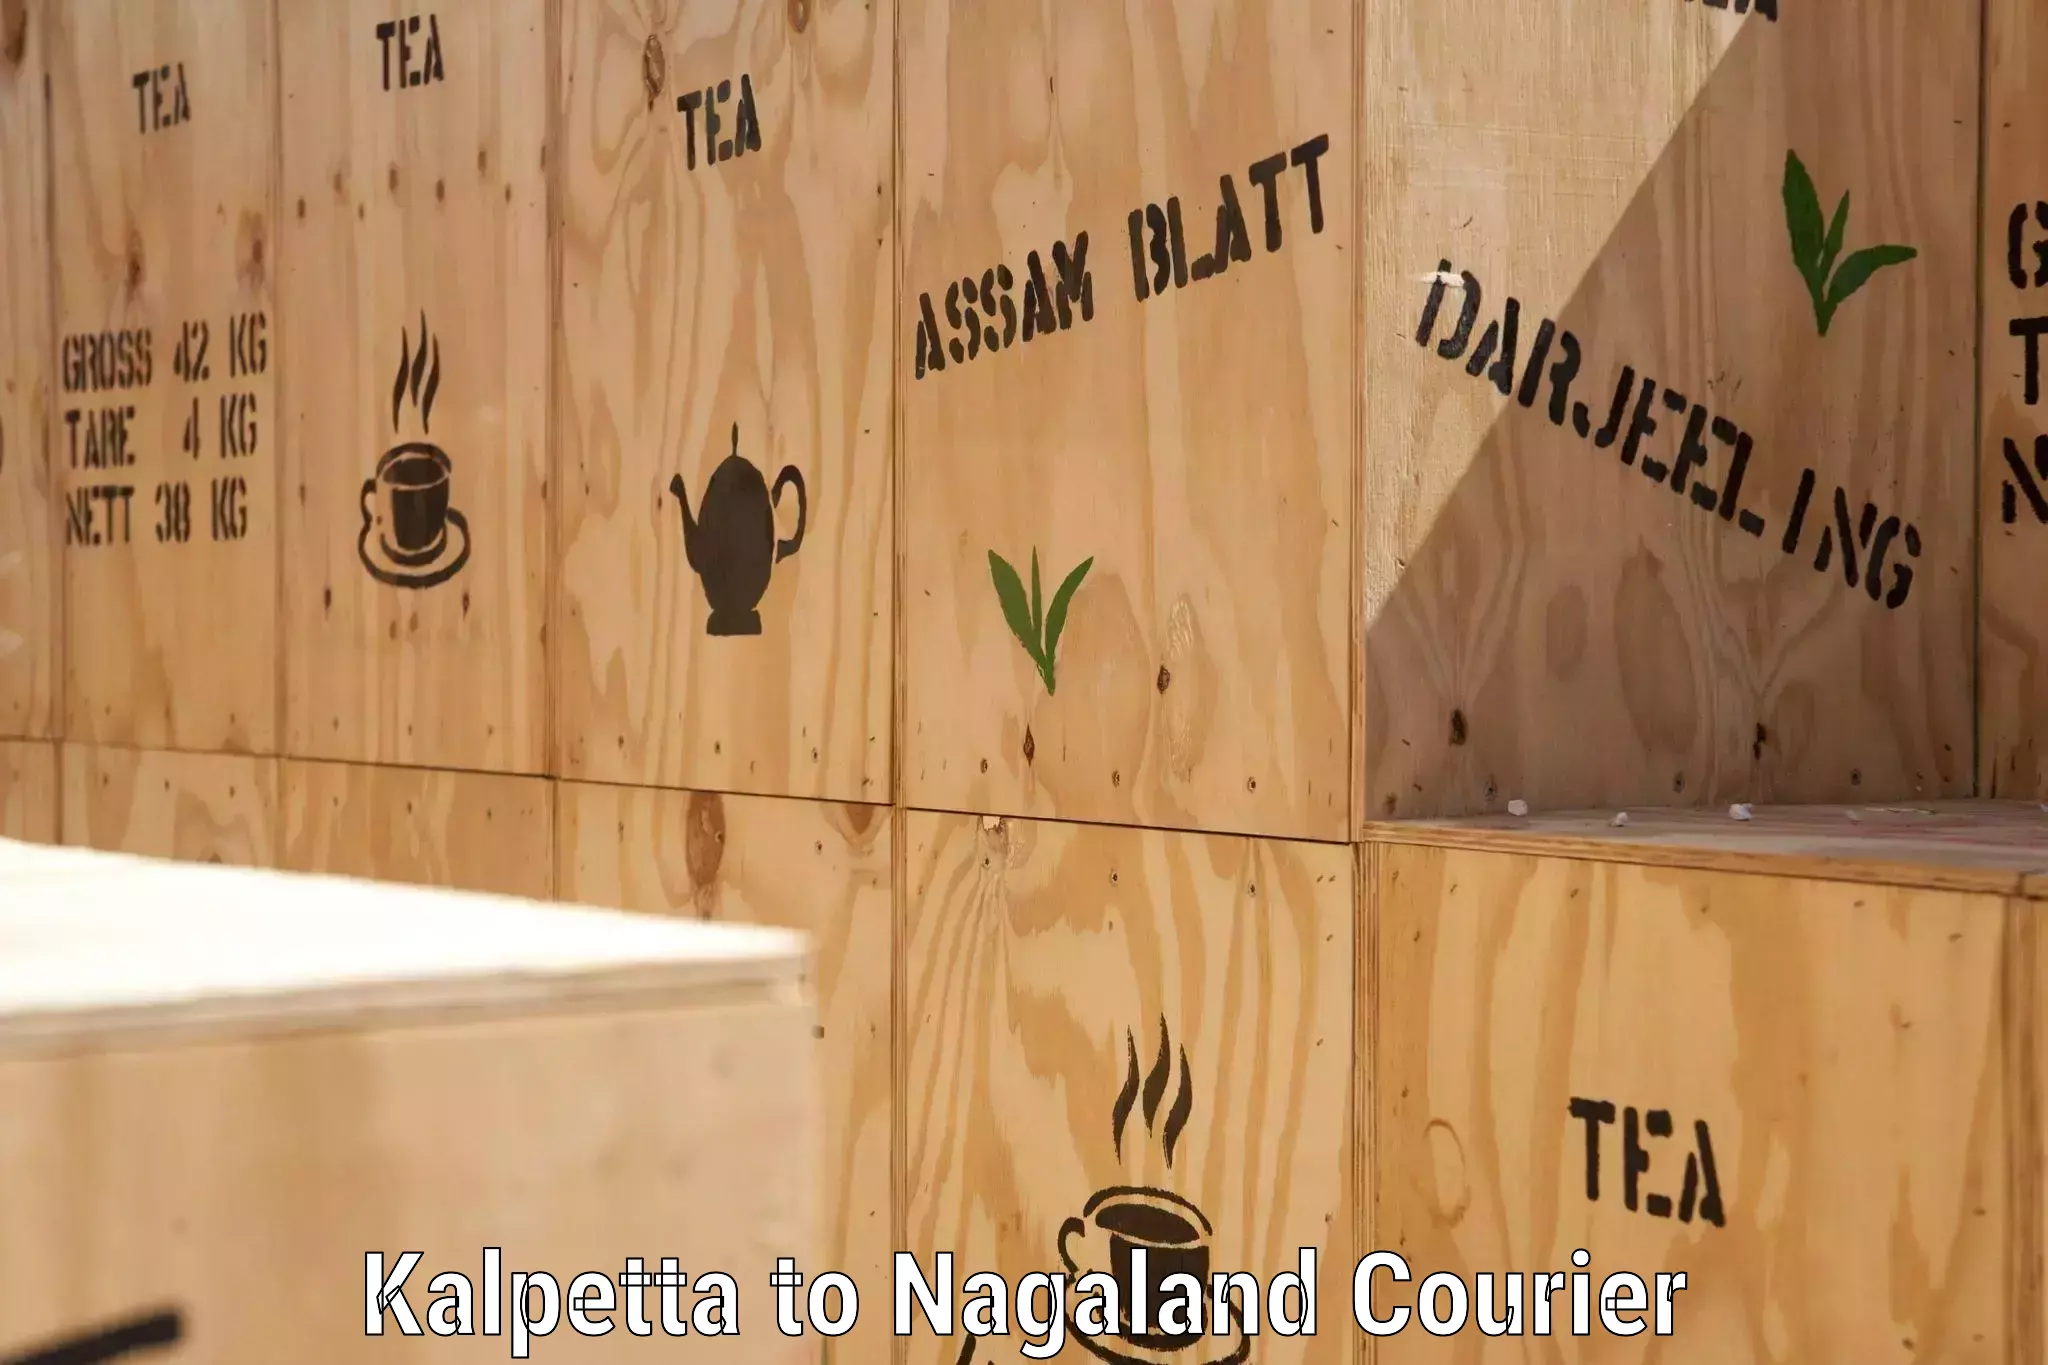 Customer-centric shipping Kalpetta to Nagaland